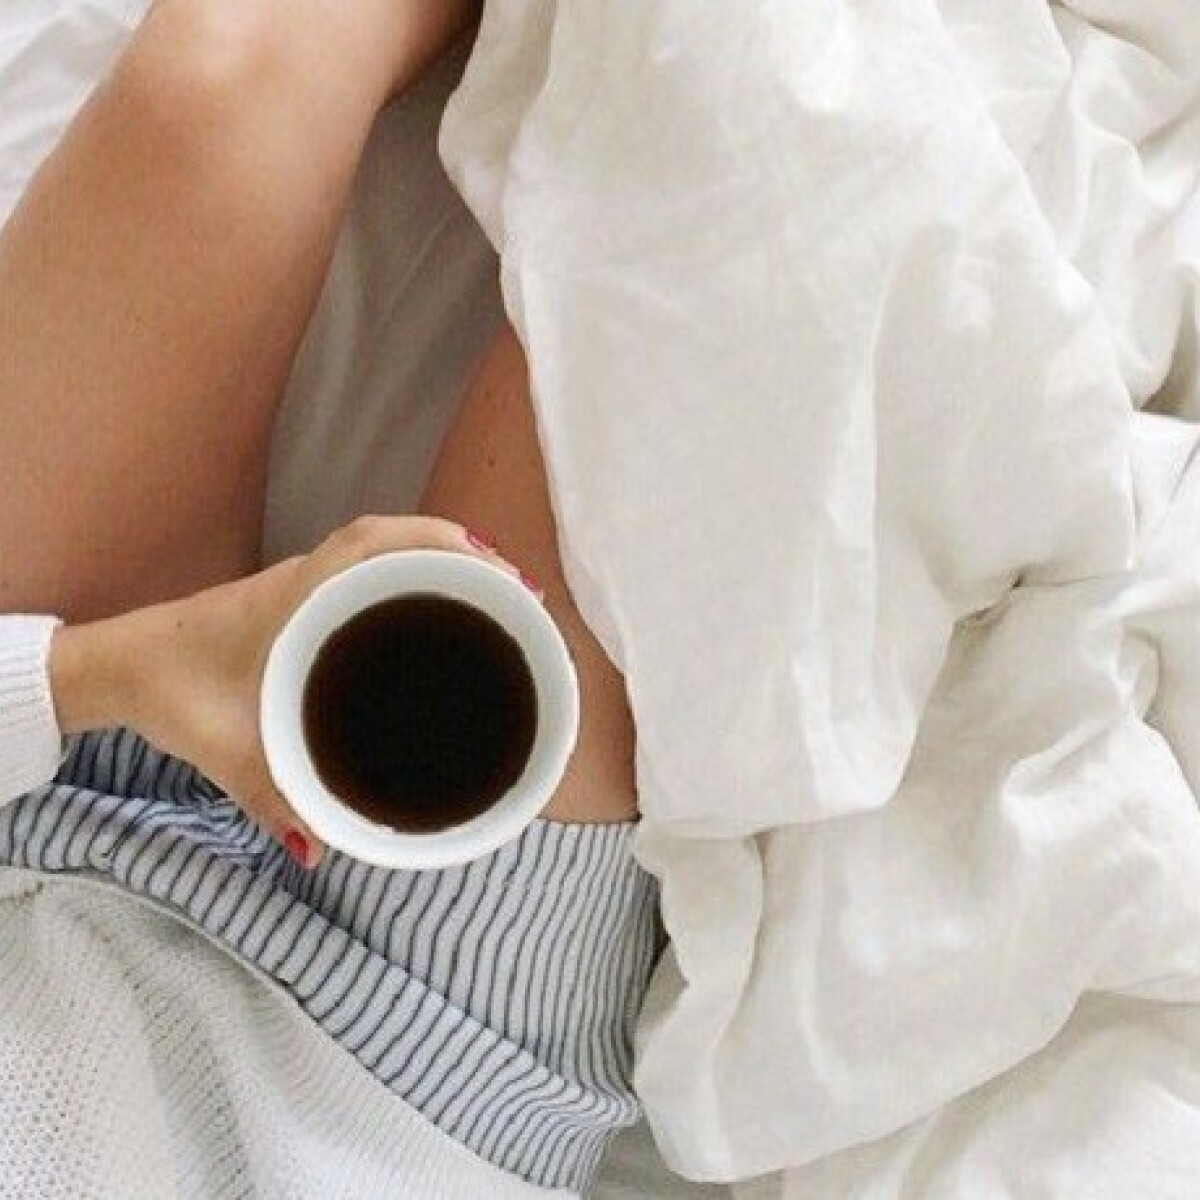 Reggeli kávé az ágyban? - Már nem csak az italod, hanem az ágyneműd is készülhet kávéból